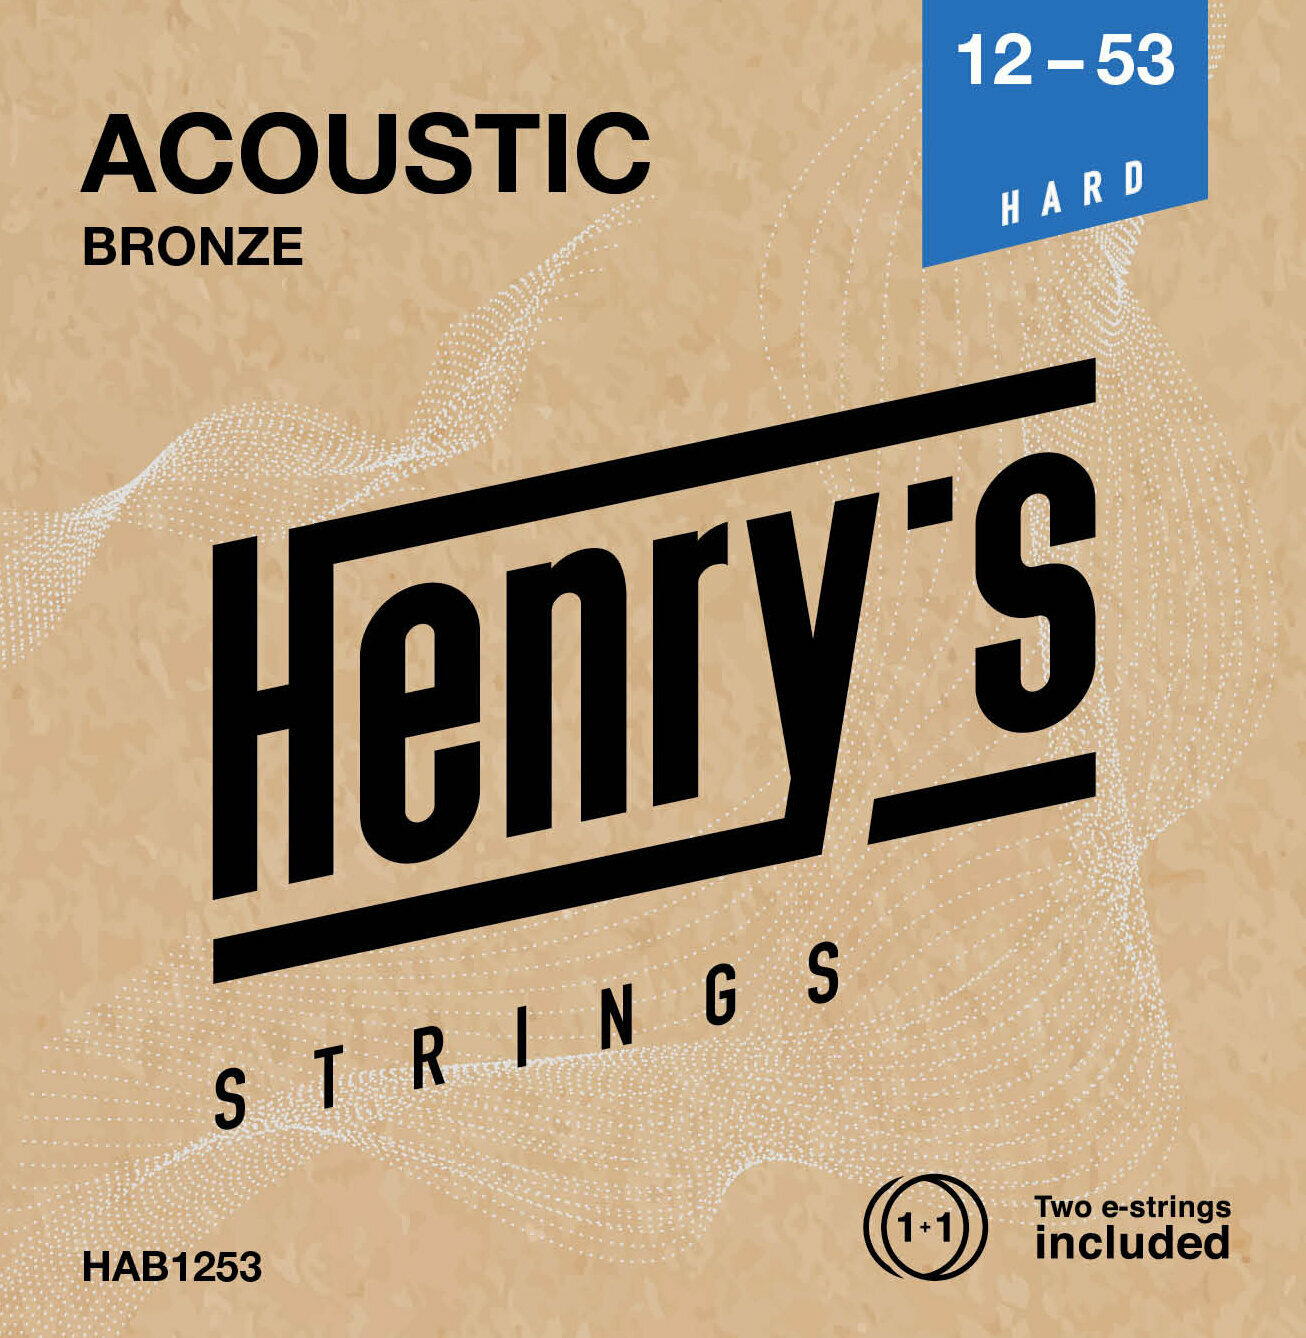 Guitar strings Henry's Bronze 12-53